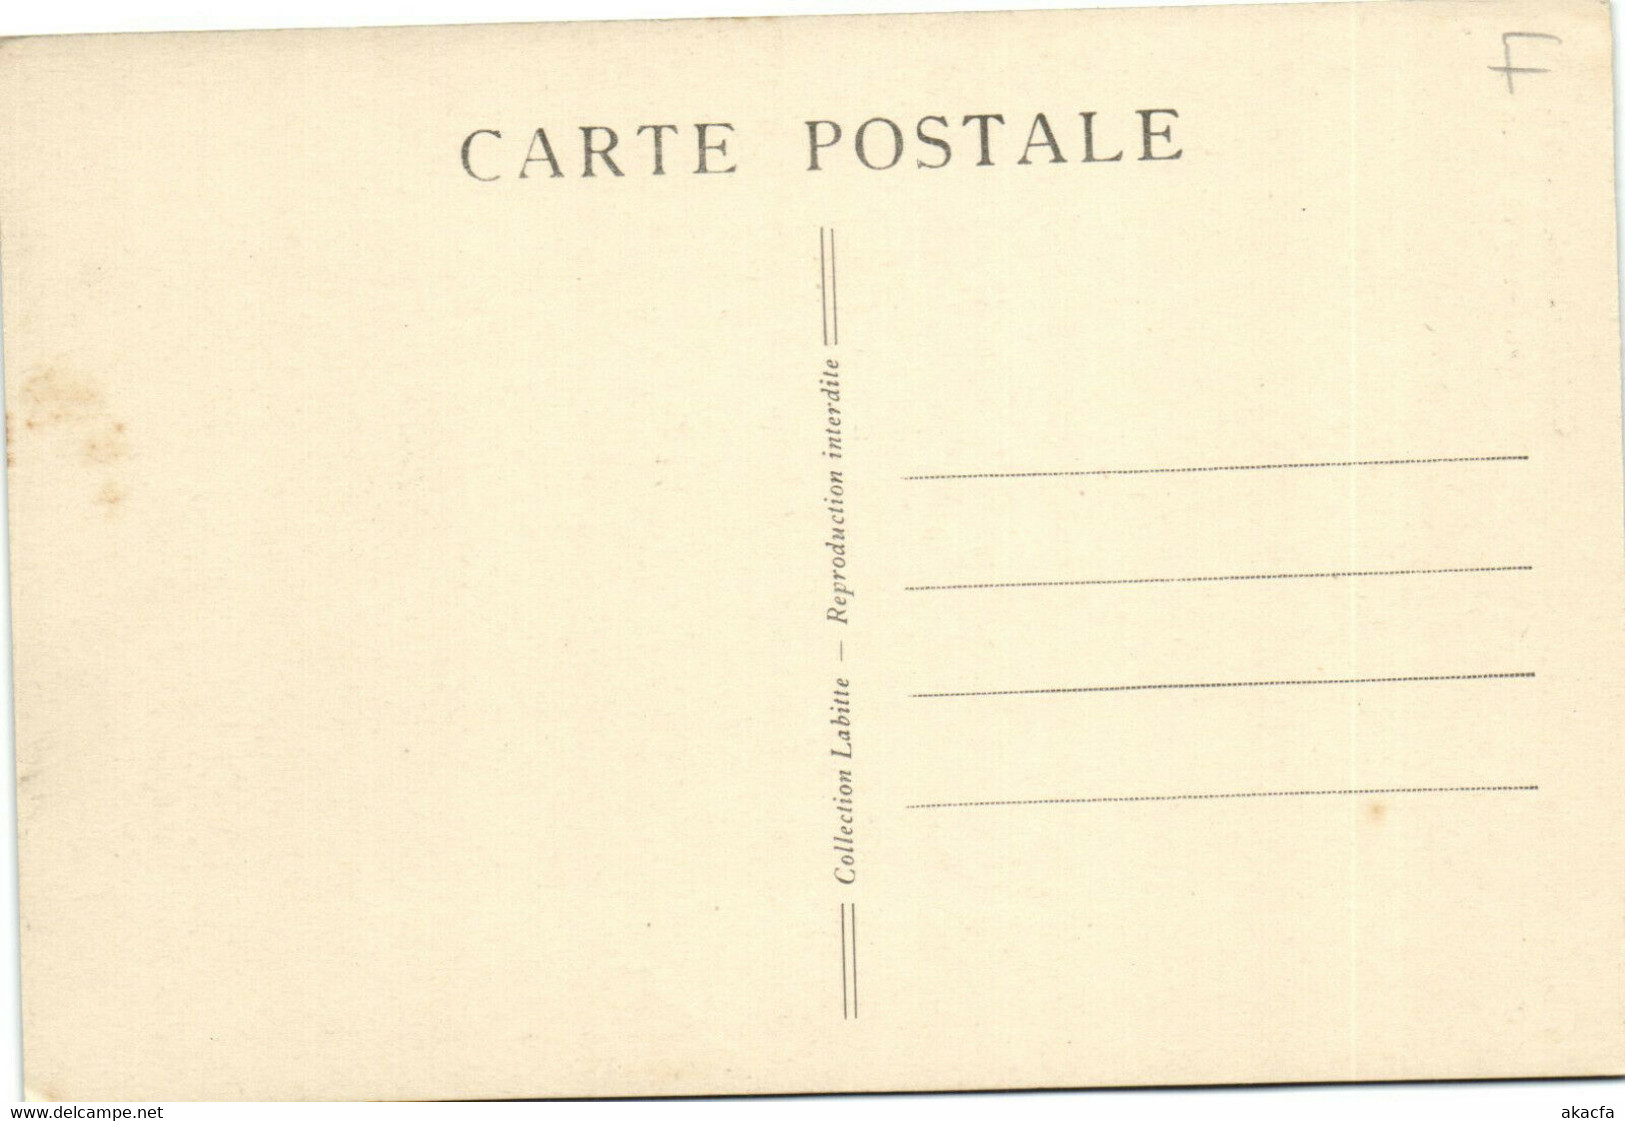 PC NIGER, BOUCHERIE EN PLEIN AIR, Vintage Postcard (b33259) - Niger